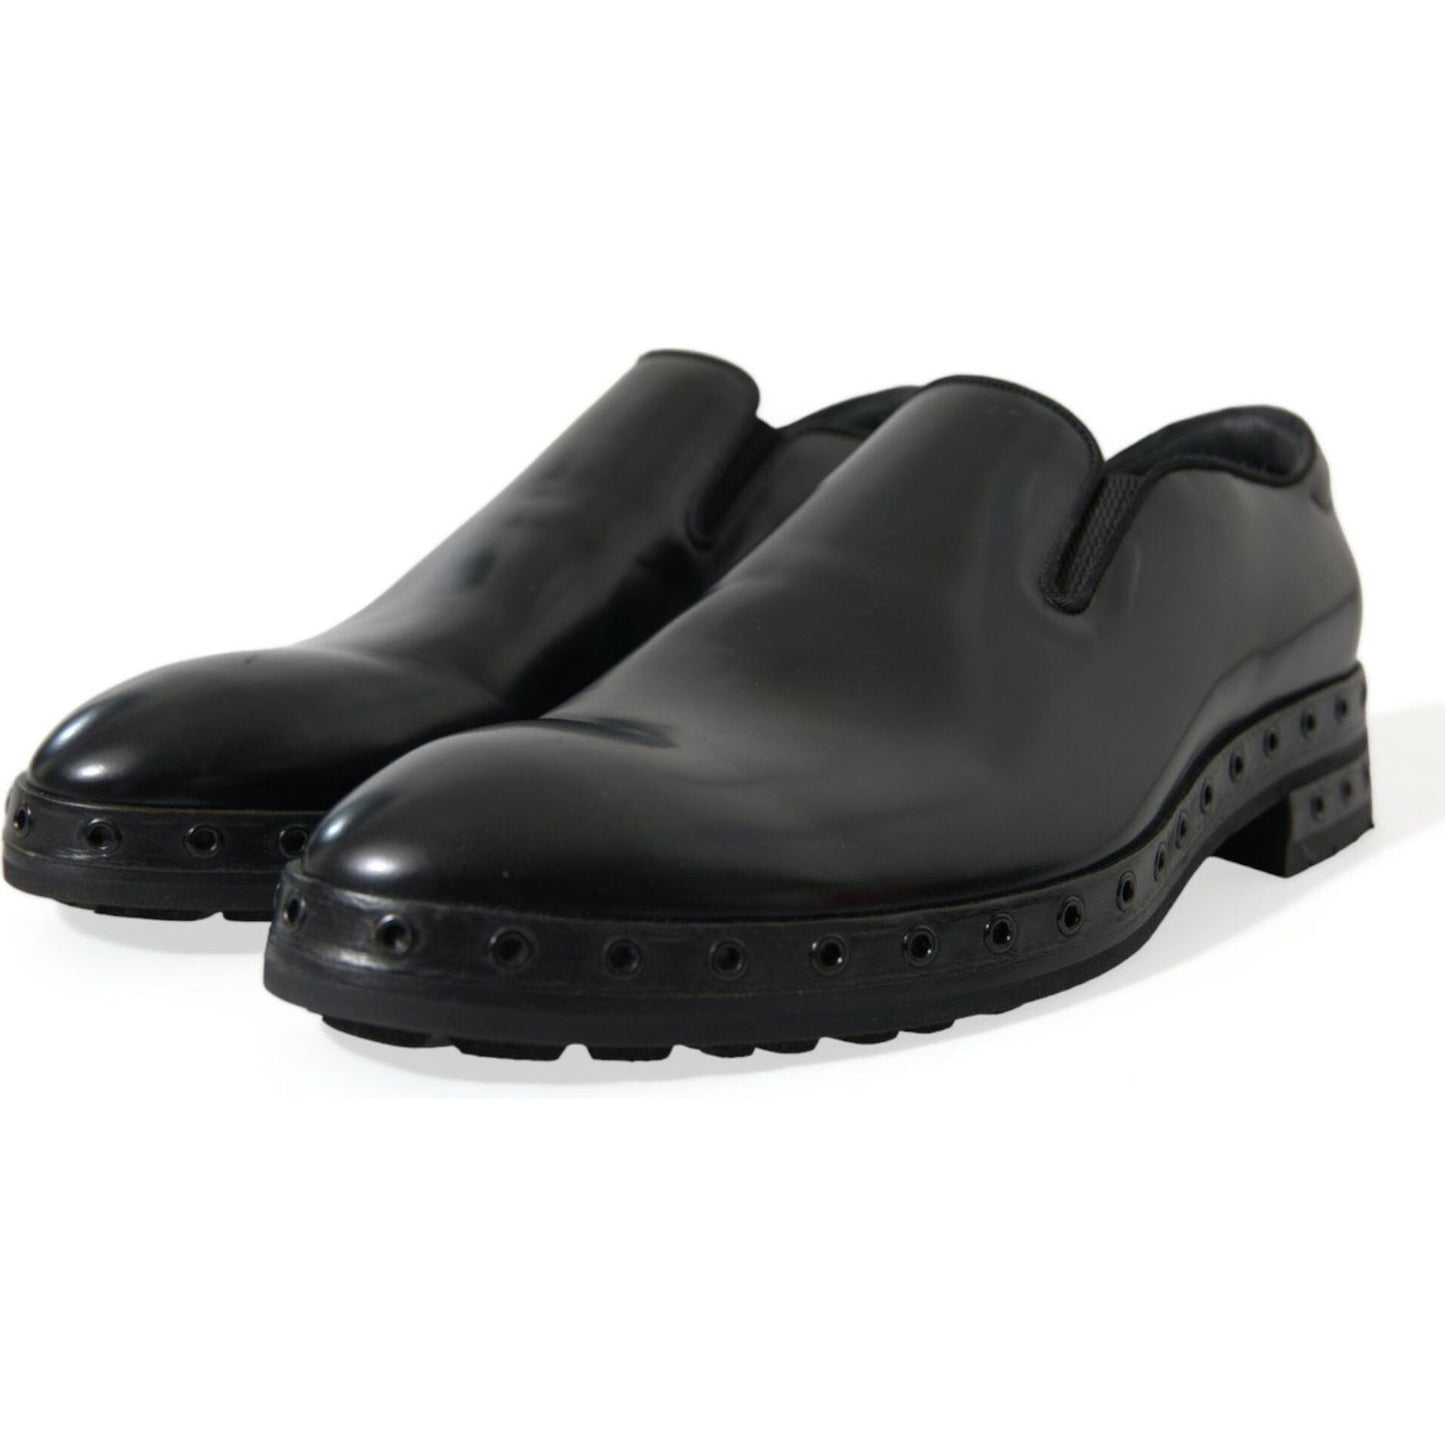 Dolce & Gabbana | Elegant Black Leather Studded Loafers| McRichard Designer Brands   